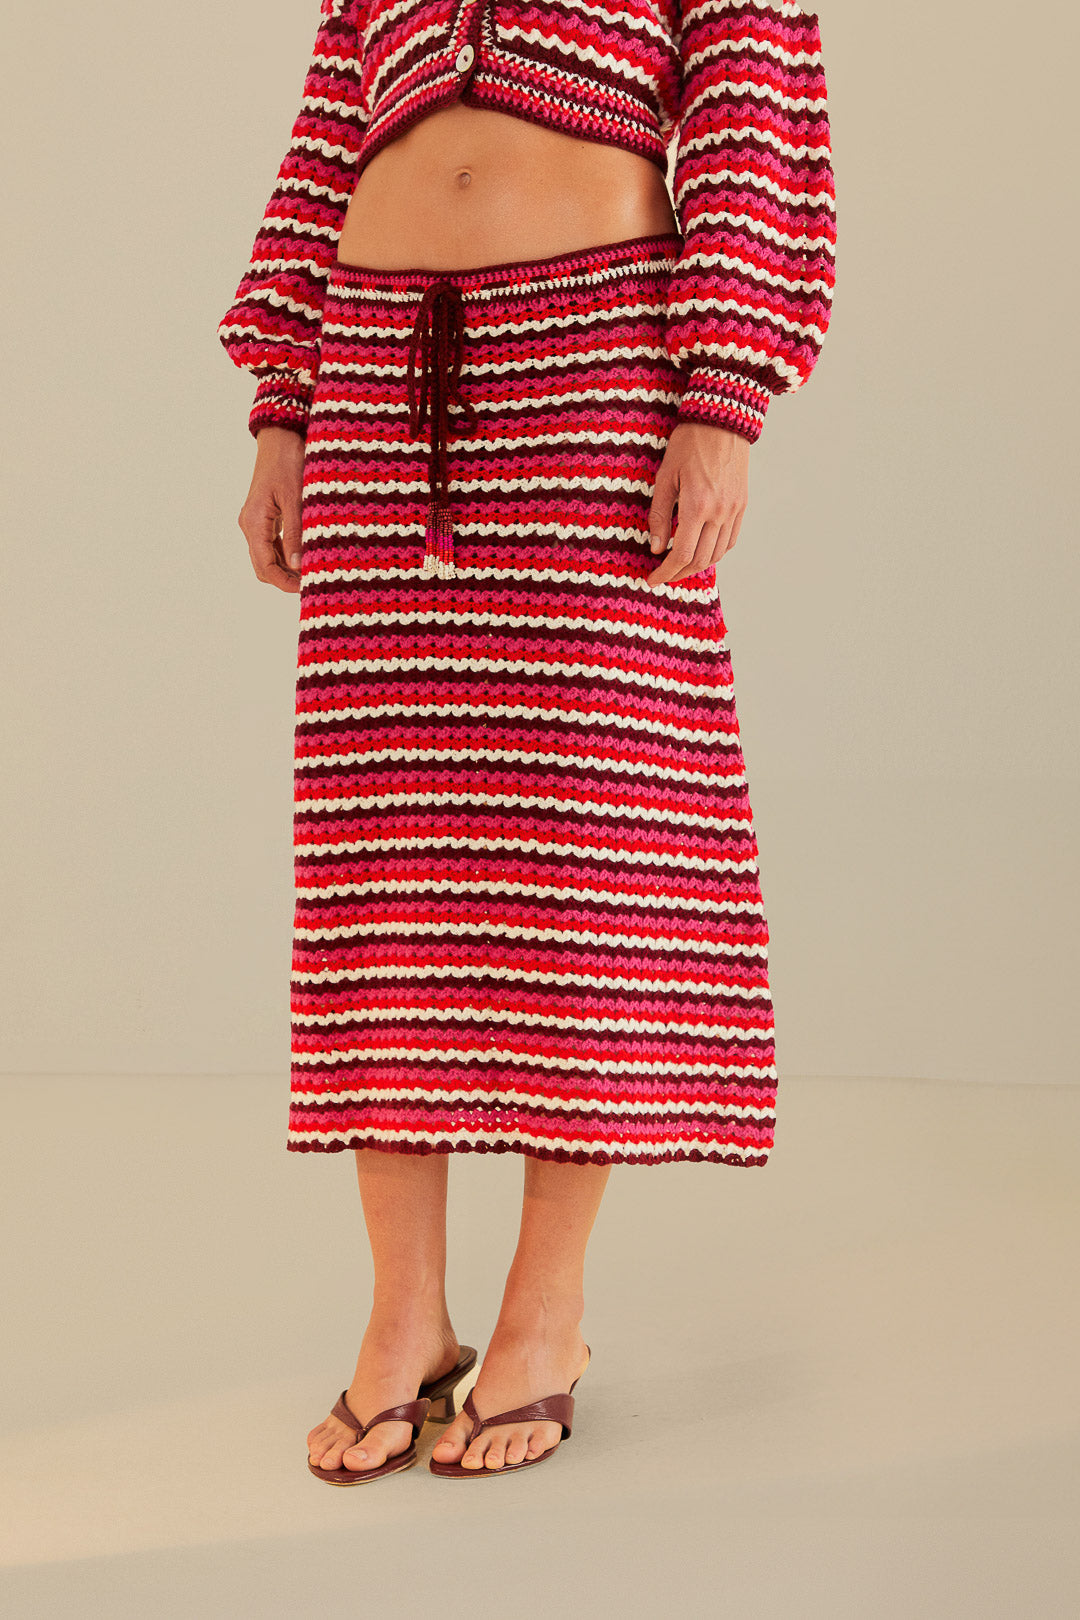 Colorful Stripes Crochet Skirt